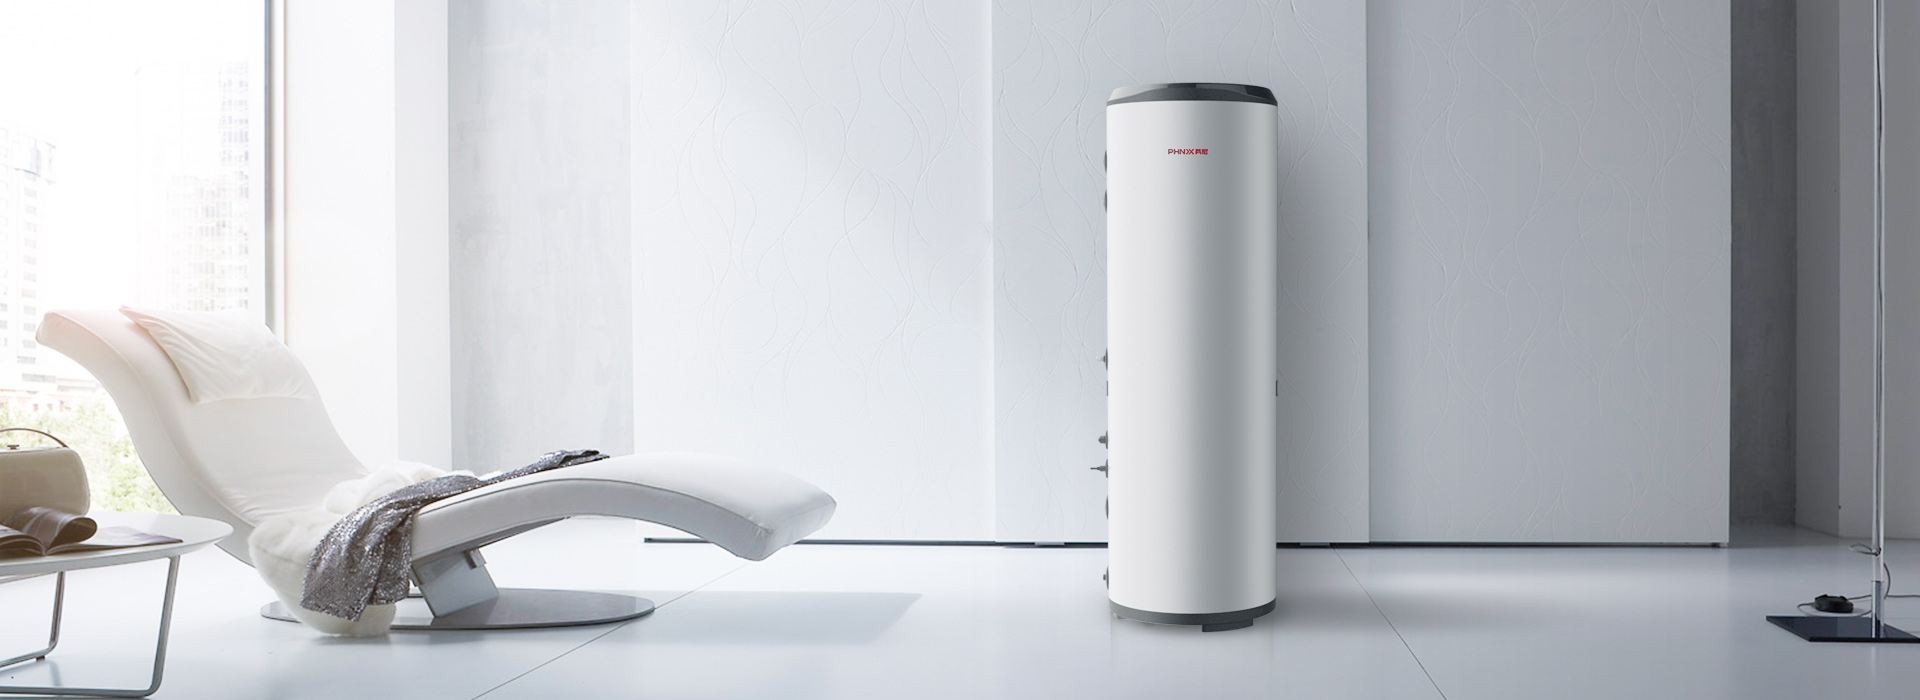 芬尼空气能热水器精英型300L亮丽白色设计，时尚外观